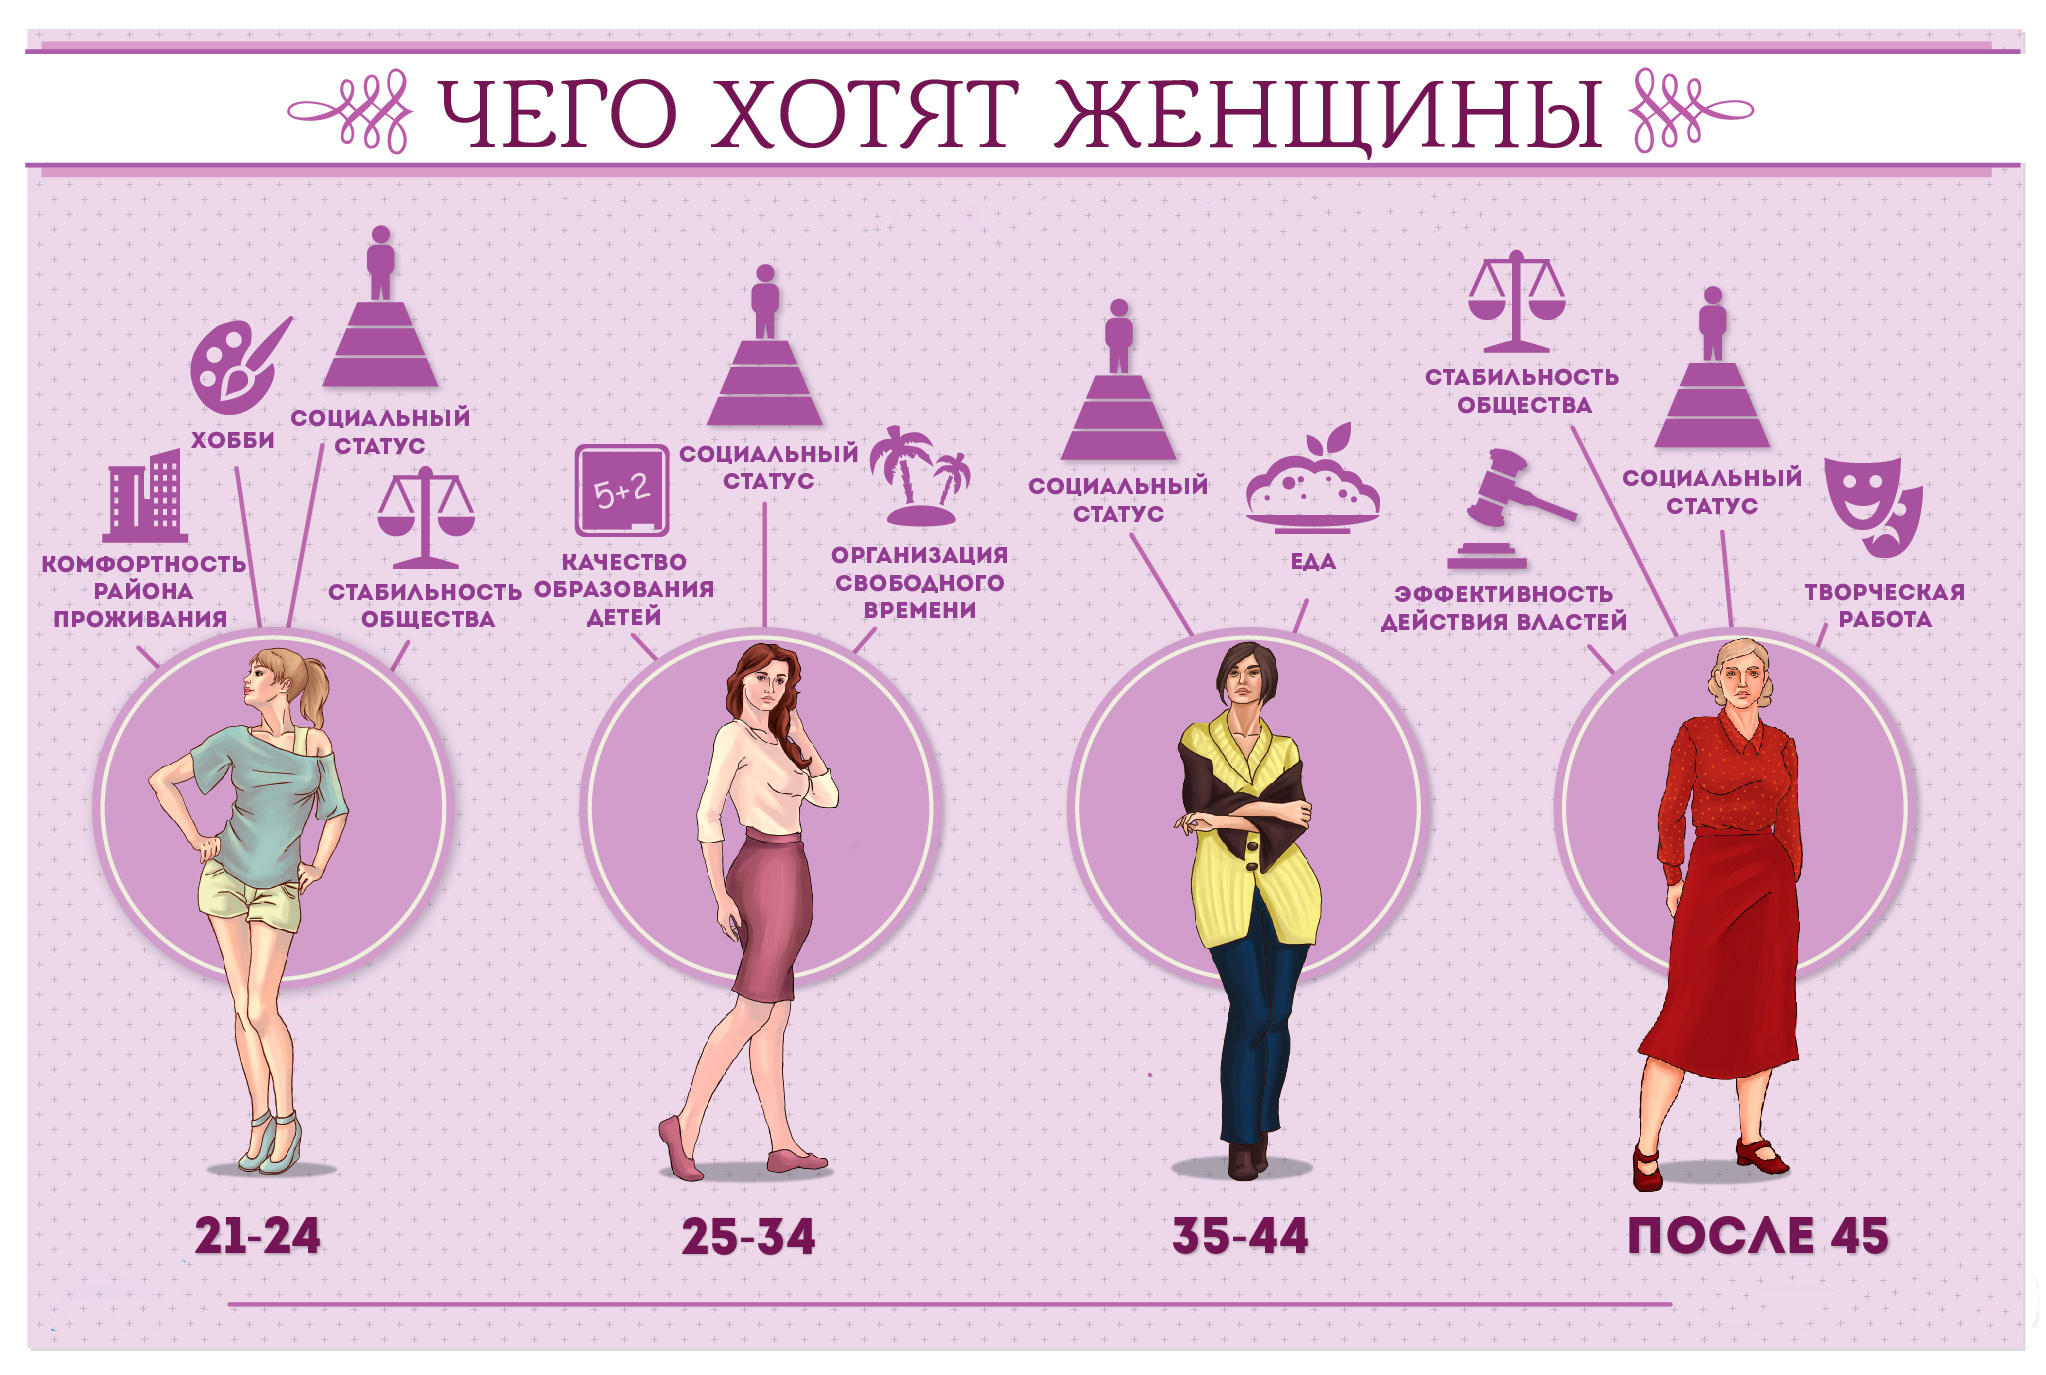 Какой идеальный возраст. Женщина инфографика. Что хочет женщина.... Что хочет женщина в разном возрасте. Чего хотят женщины инфографика.